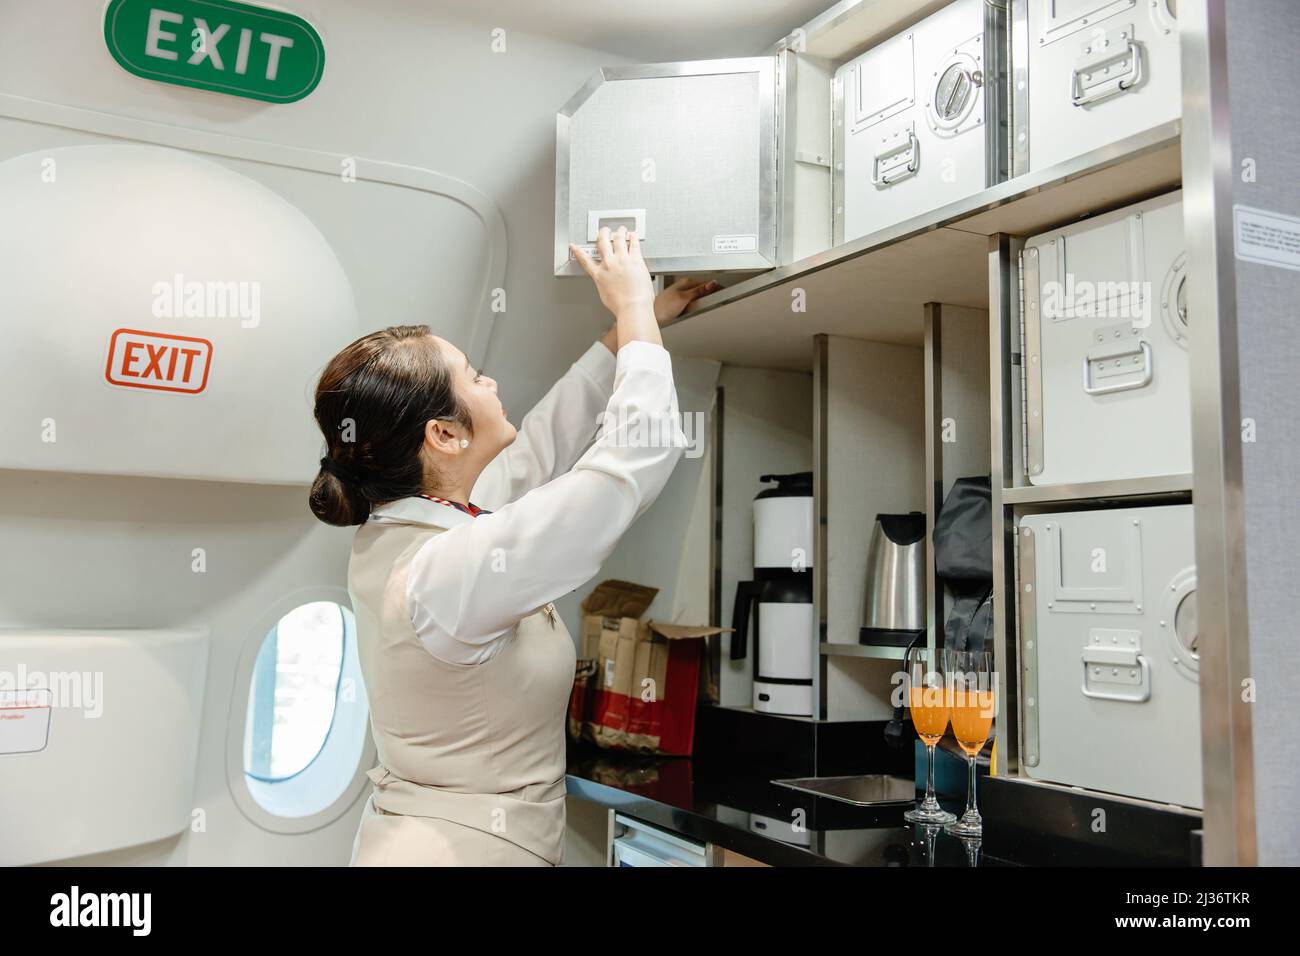 Die Flugbegleiterin bereitet Lebensmittel mithilfe des Sicherheitsschranks in der Flugkabine zu. Stockfoto